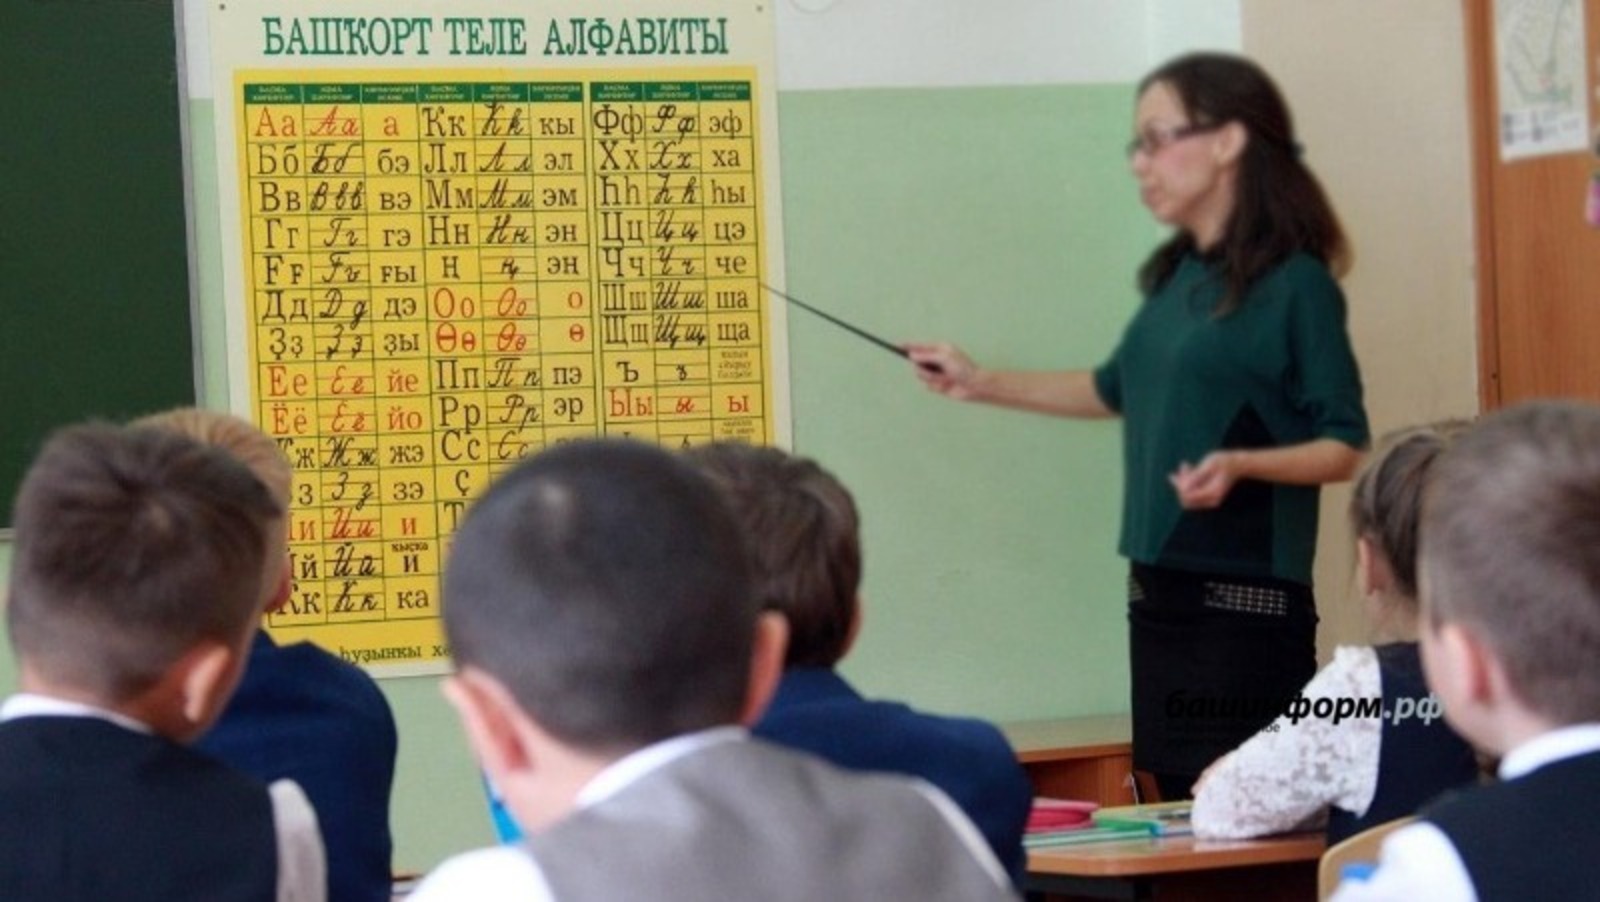 В Башкирии депутаты намерены освободить учителей от лишней бумажной волокиты